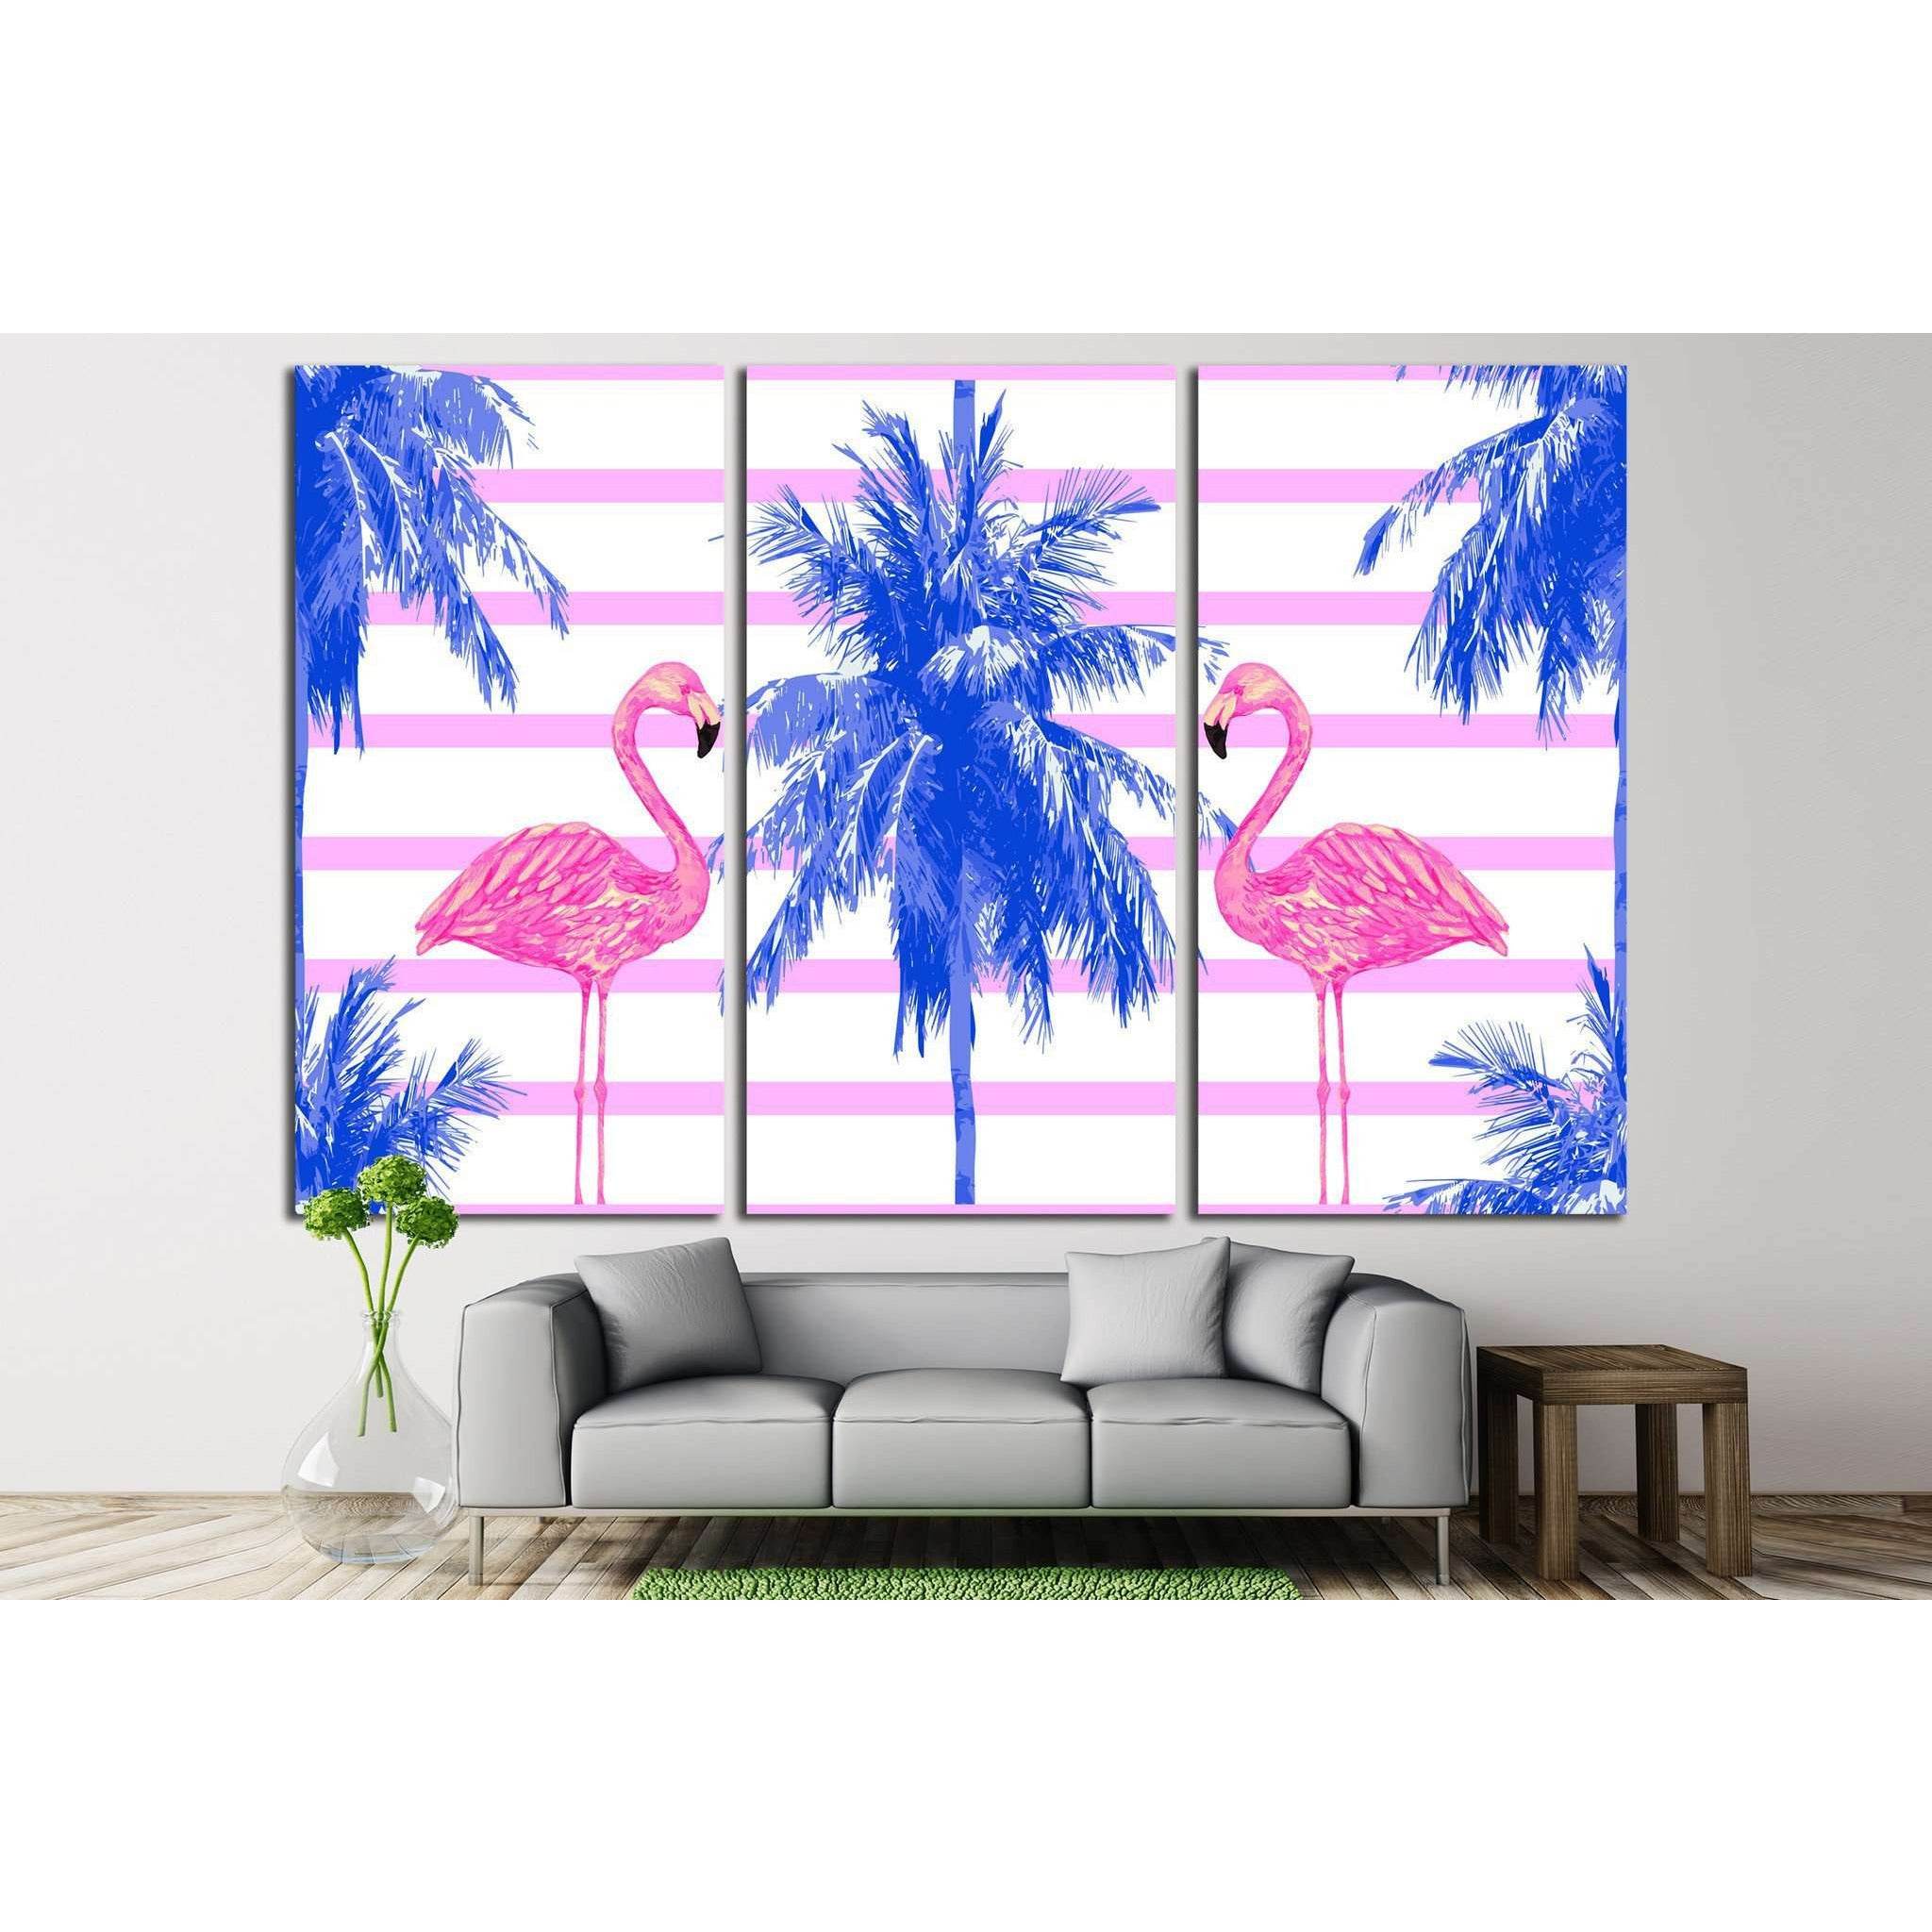 watercolor pink flamingos №708 Ready to Hang Canvas Print